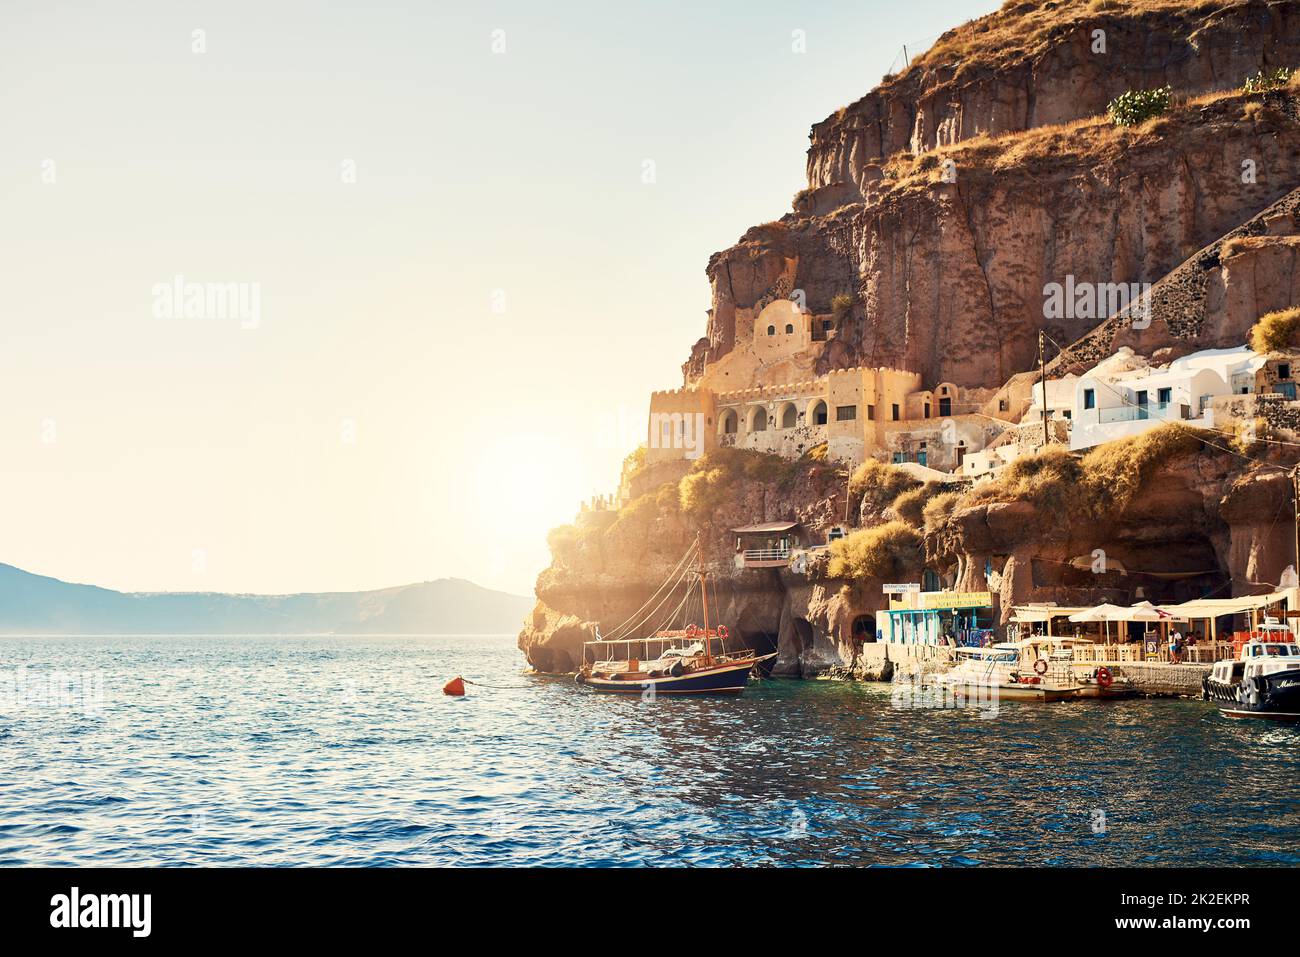 Quelle belle journée pour nager. Photo d'arrière-plan d'un beau paysage de rivage en méditerranée pendant la journée. Banque D'Images